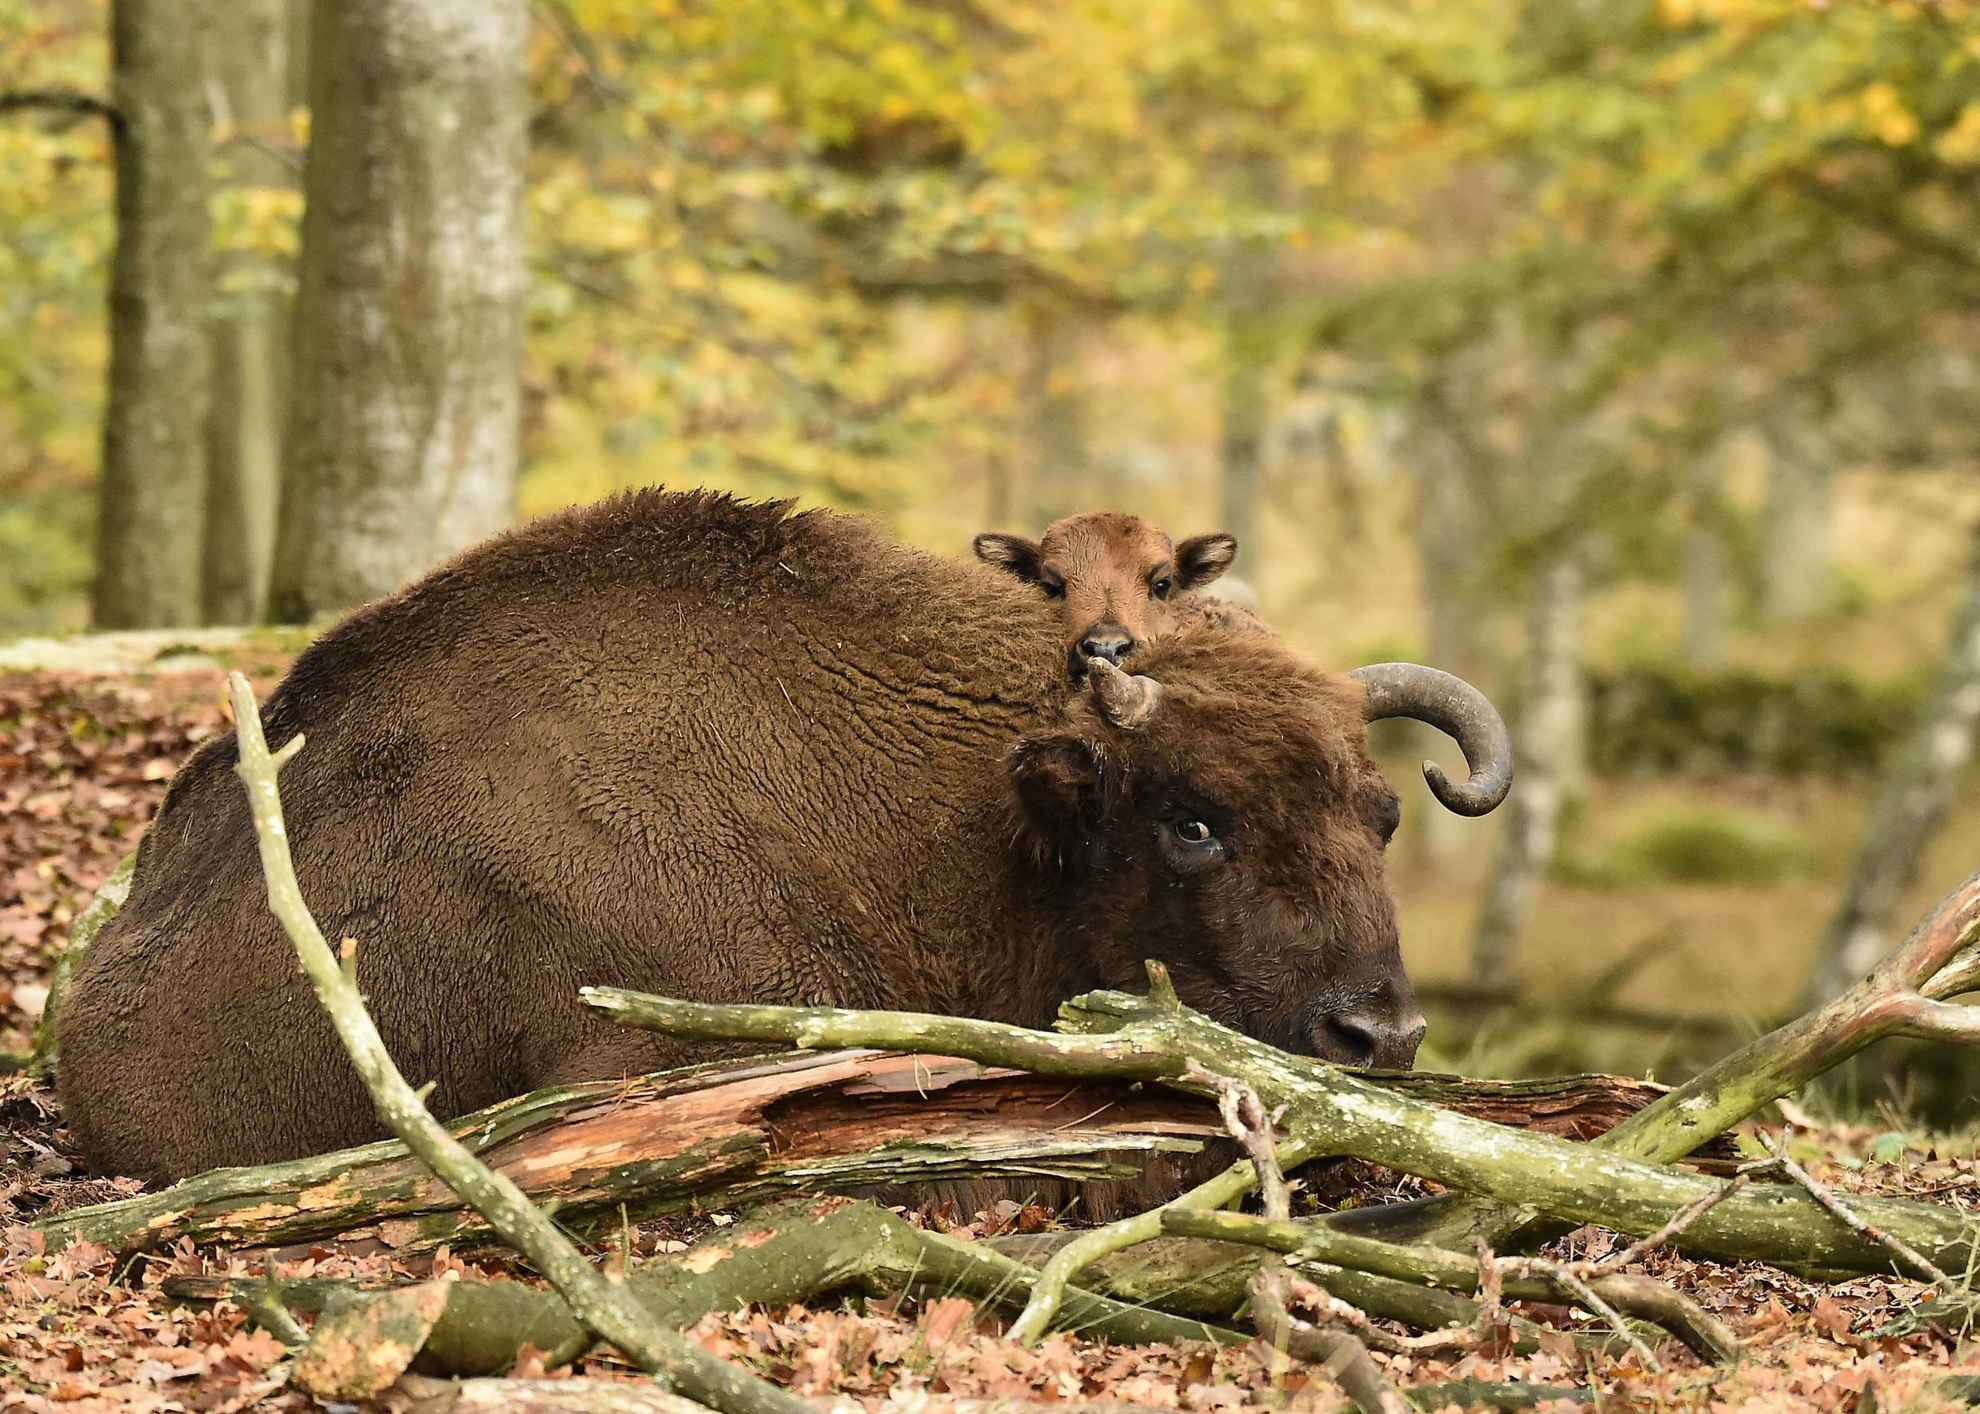 European bison at Eriksberg, Blekinge